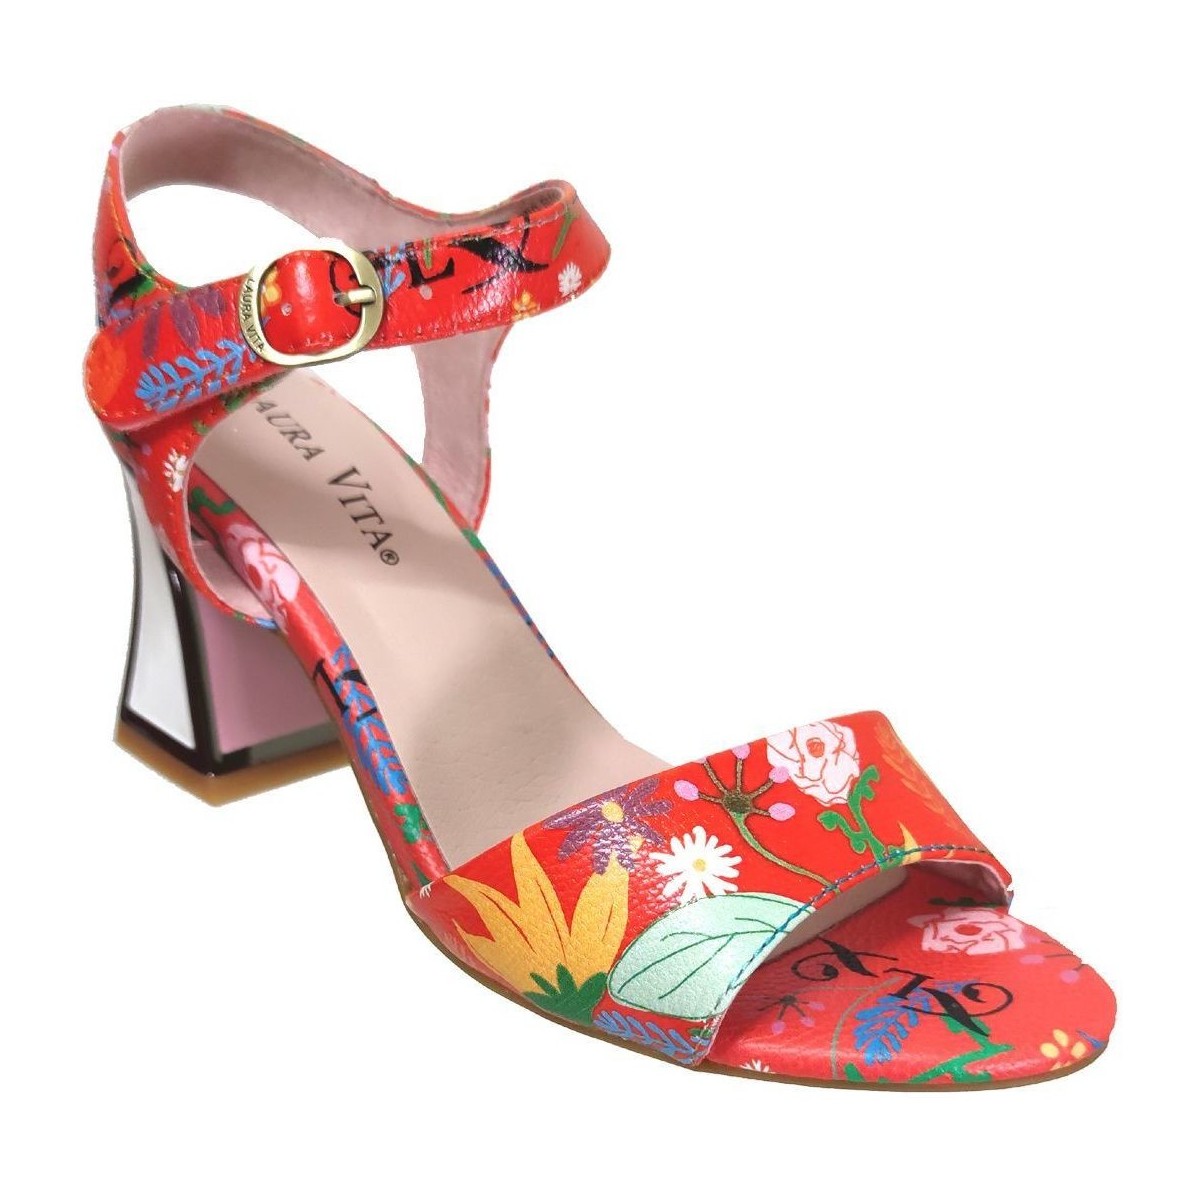 Chaussures Femme Sandales et Nu-pieds Laura Vita Jacbo 0122 Rouge